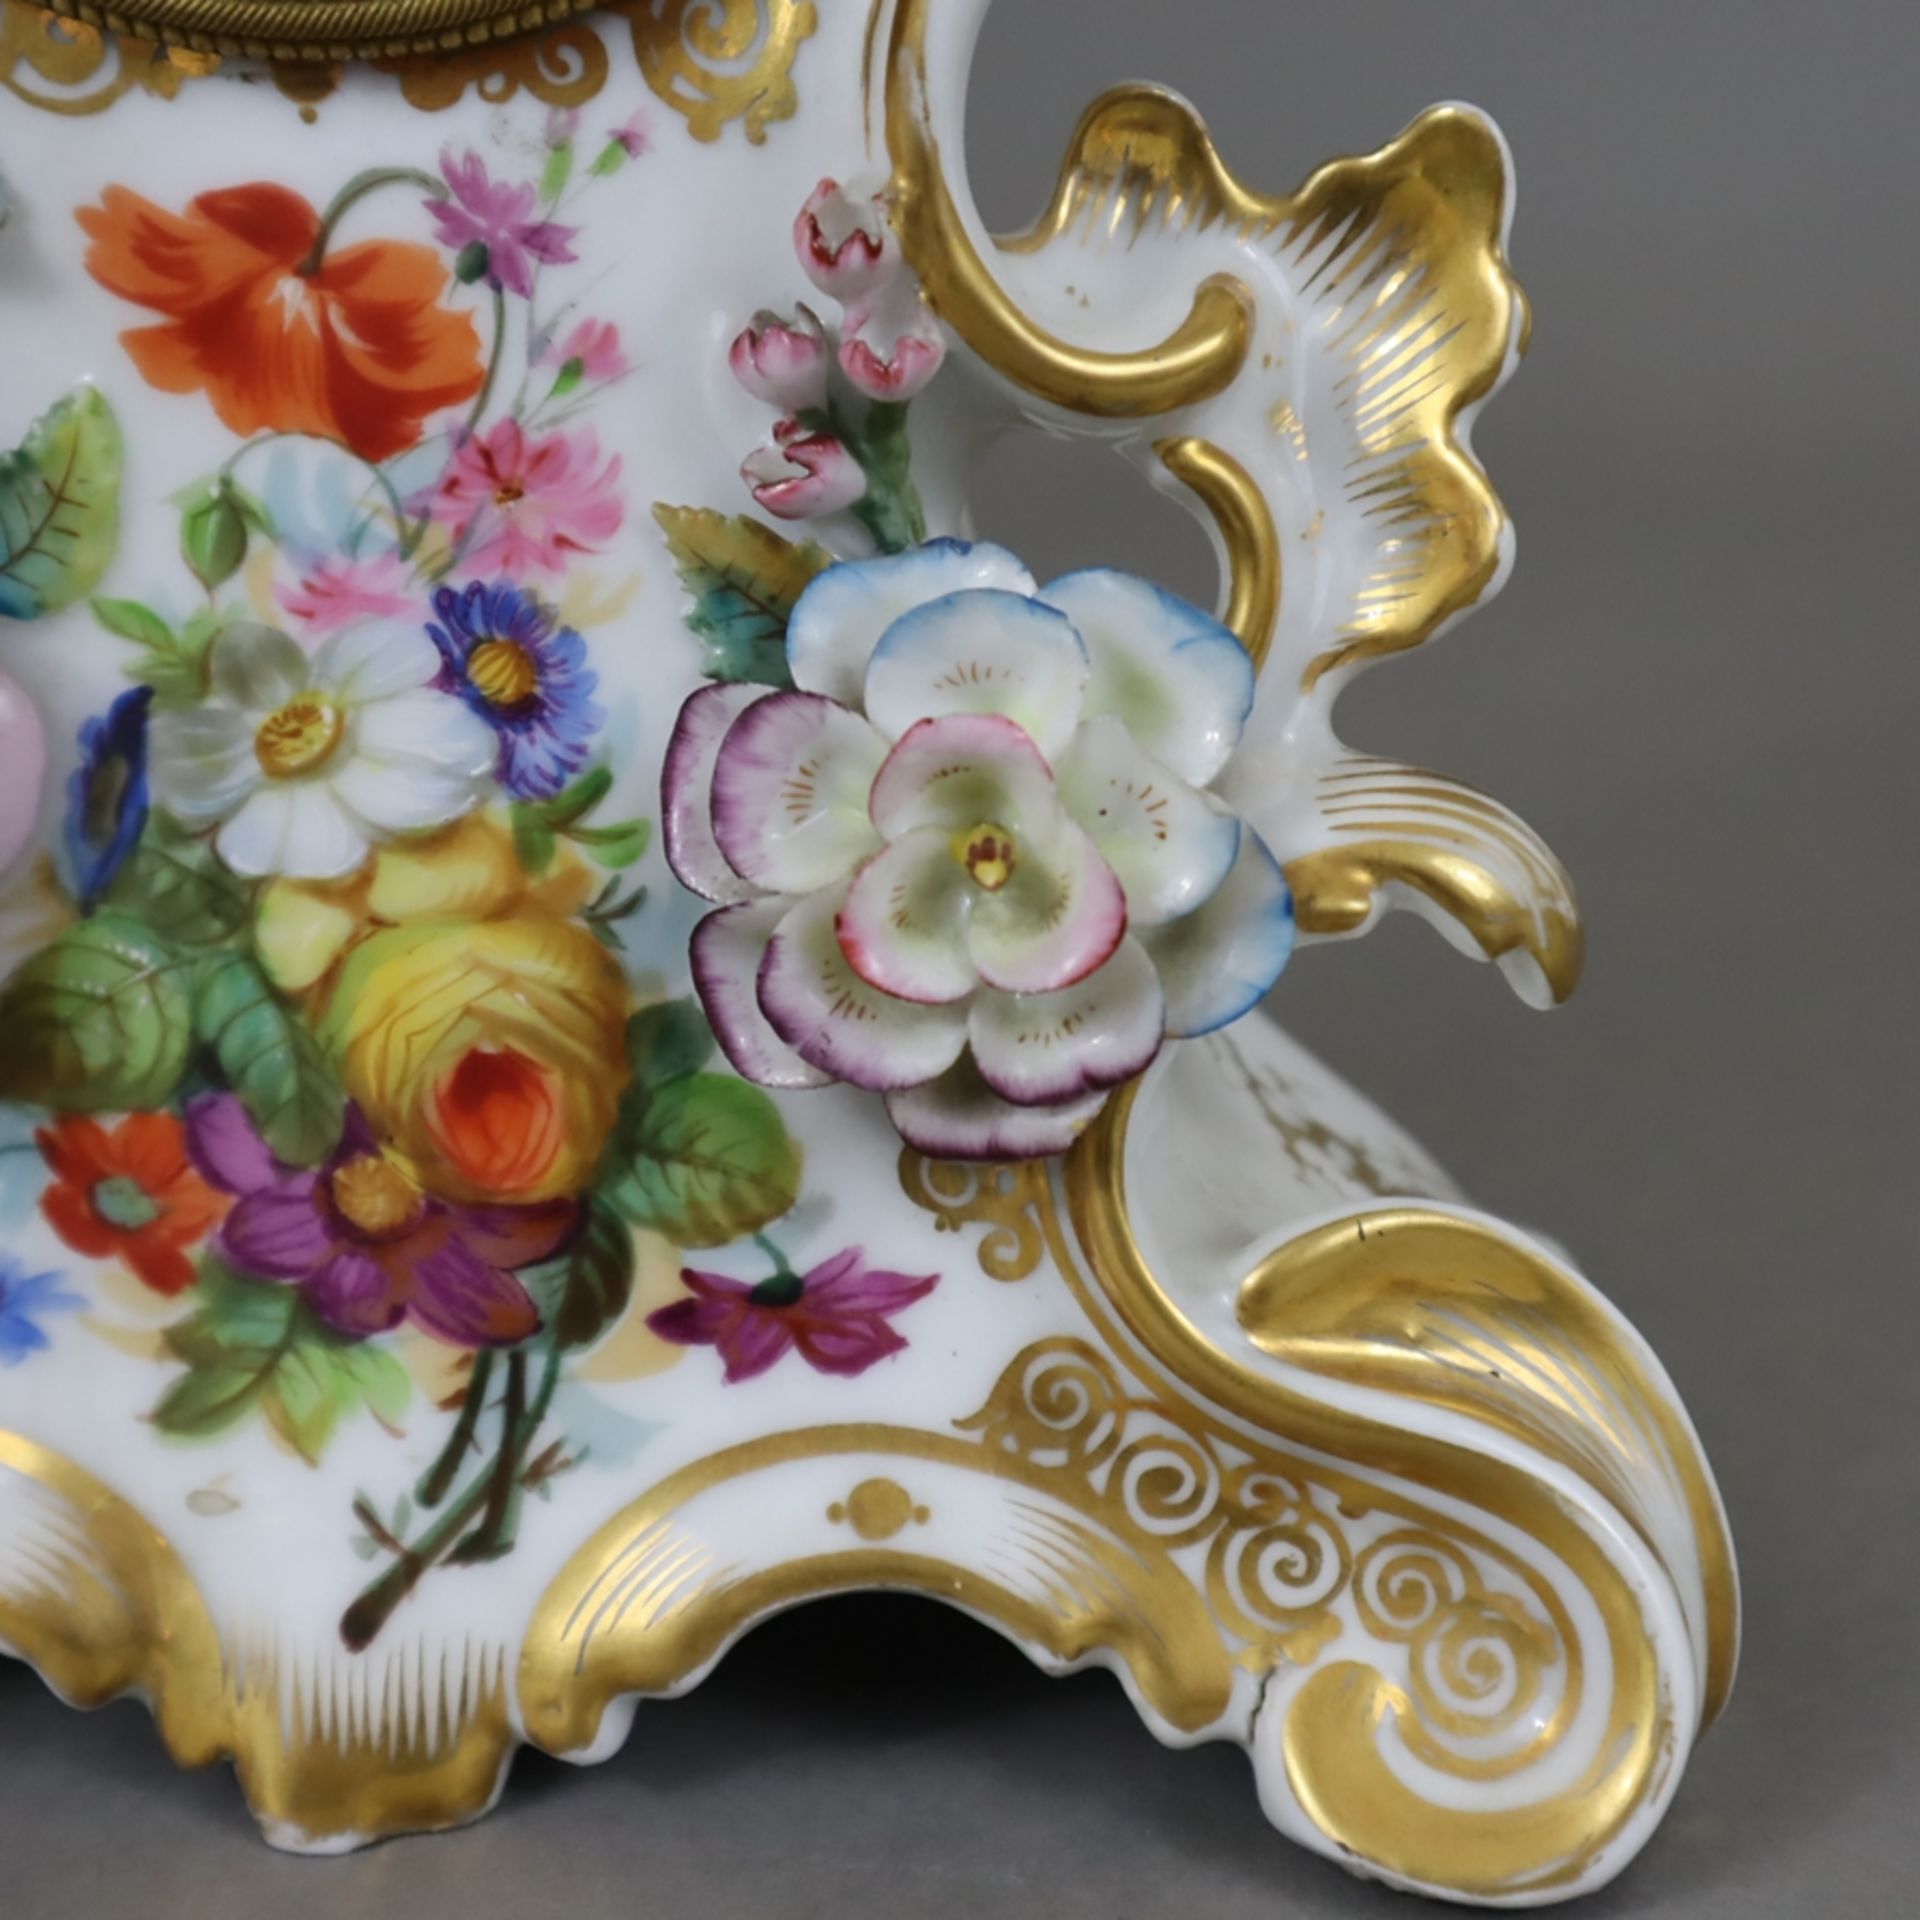 Porzellanuhr - teils durchbrochen gearbeitetes Rocaillegehäuse mit polychromer Blumenmalerei, Golds - Image 6 of 11